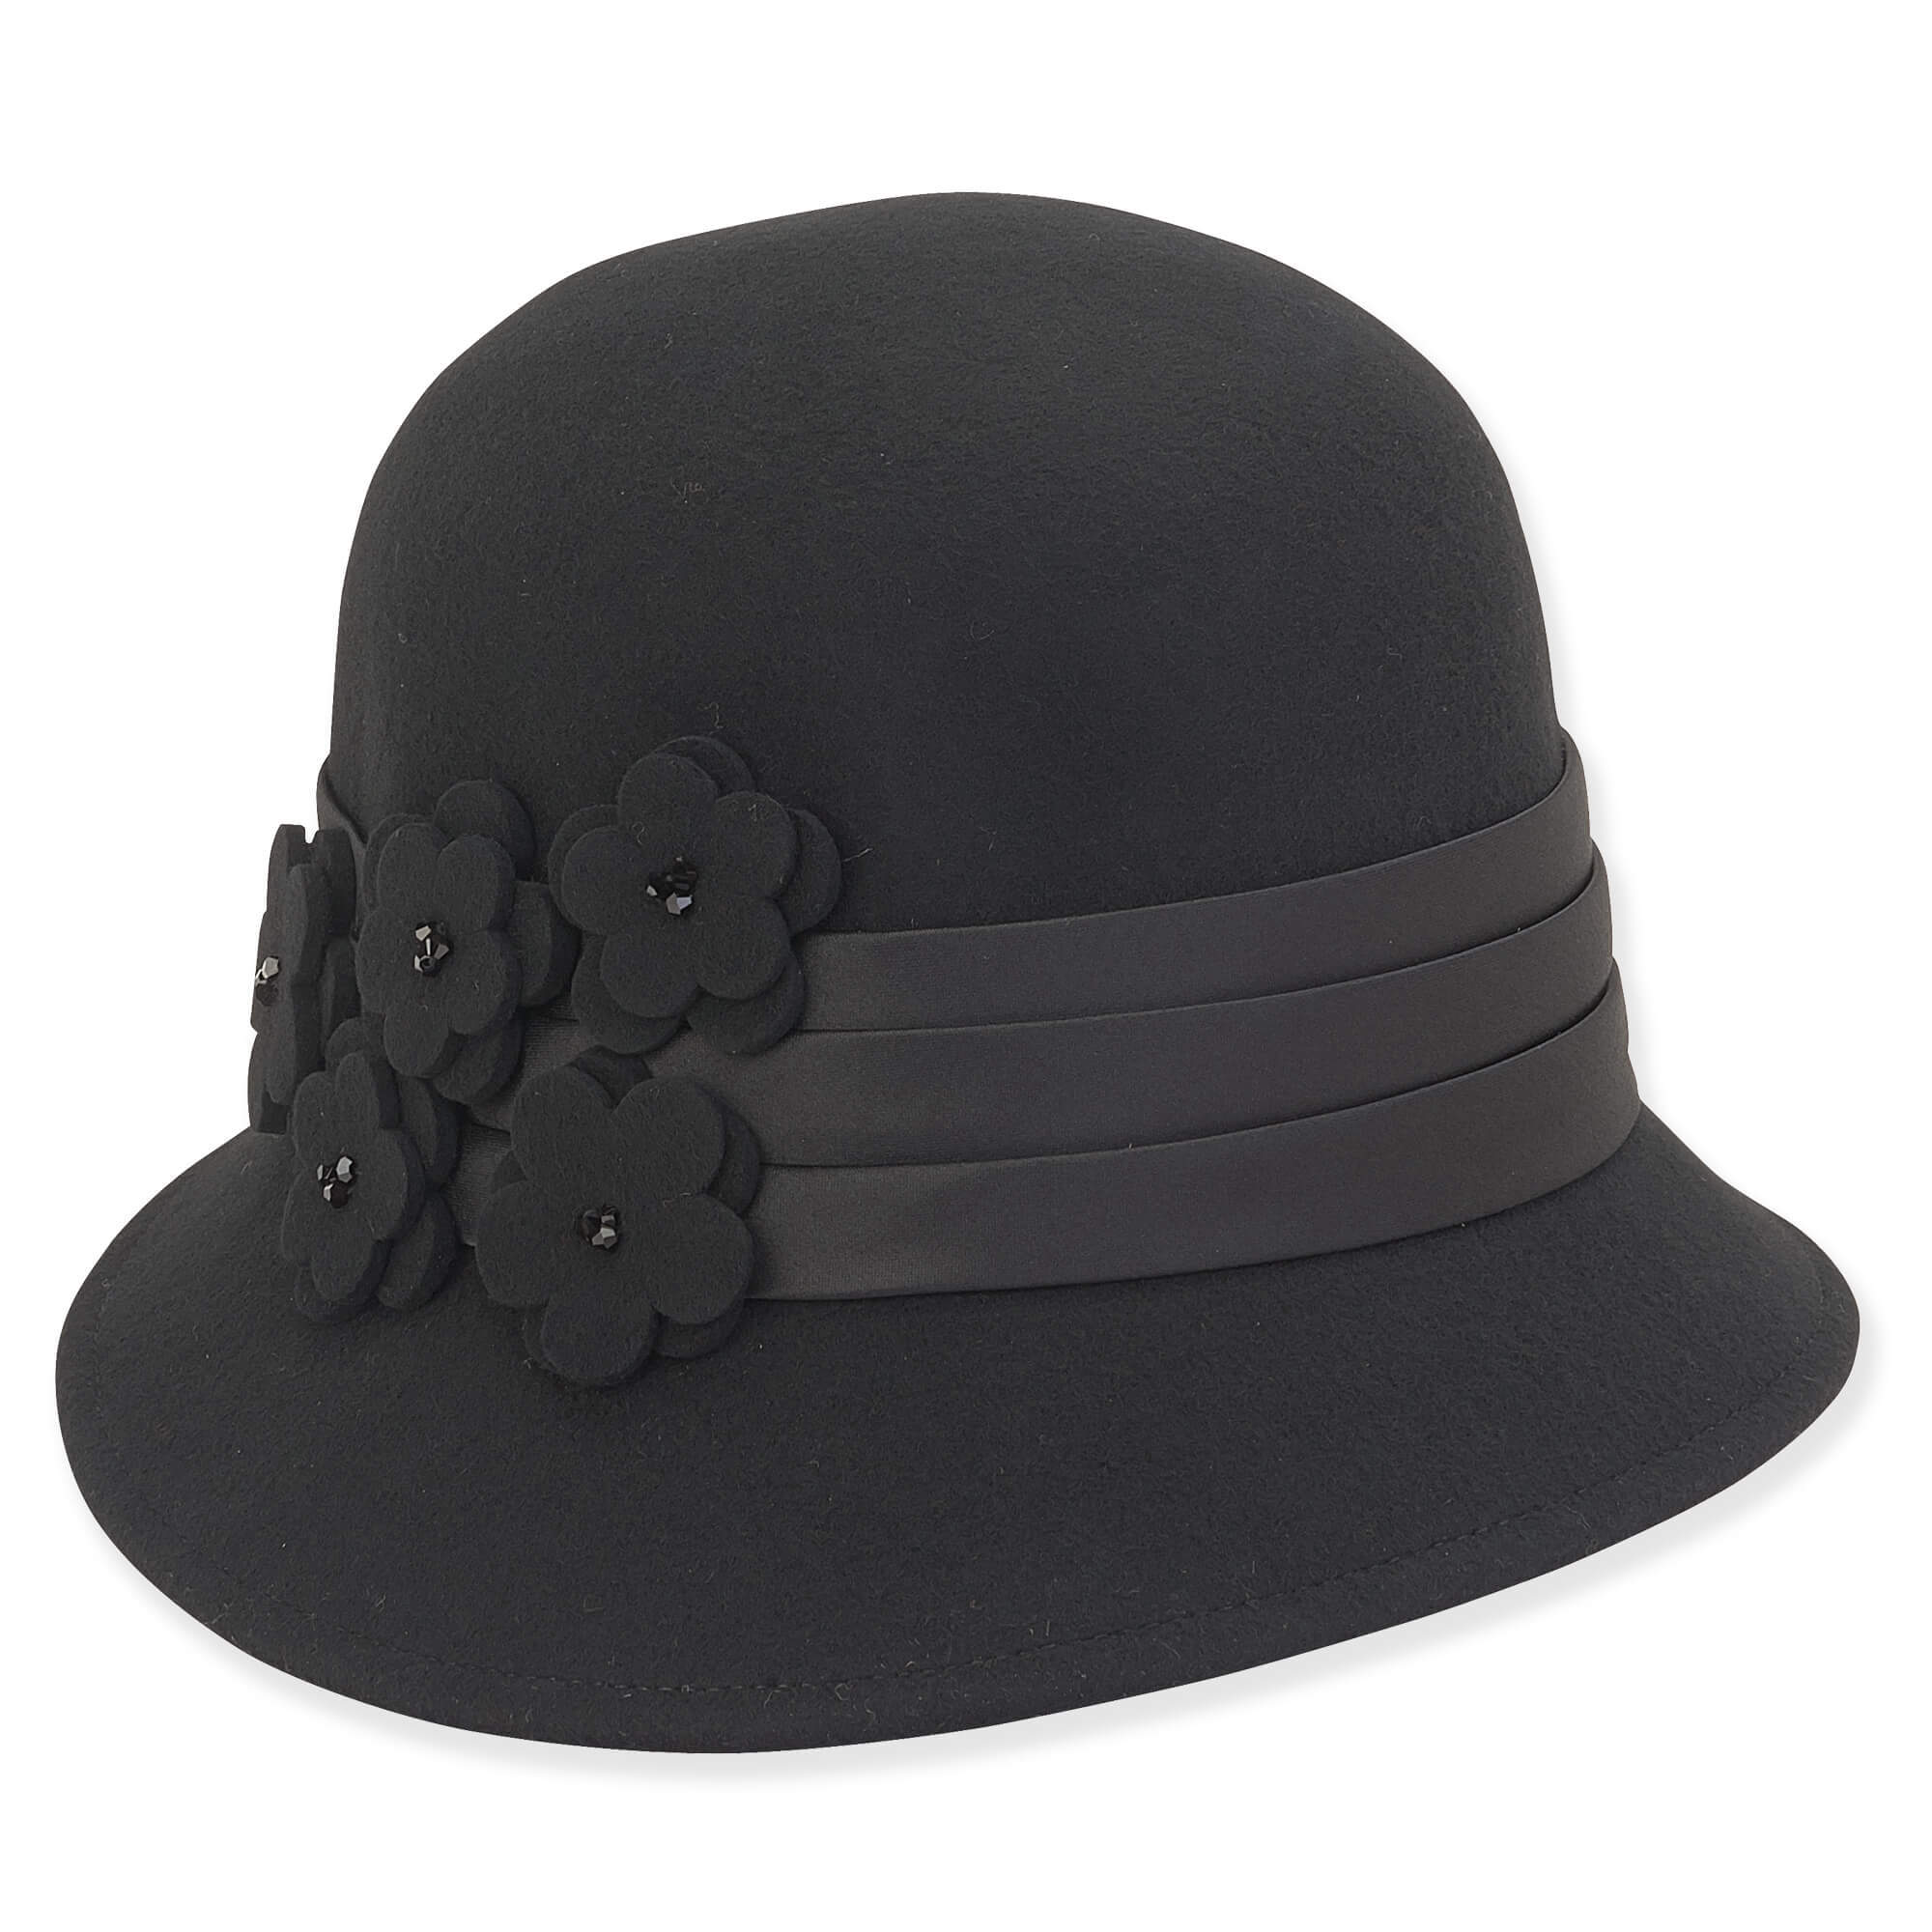 Wool Felt Cloche Hat with Floral Accent - Adora® Hats Cloche Adora Hats AD1104A Black  